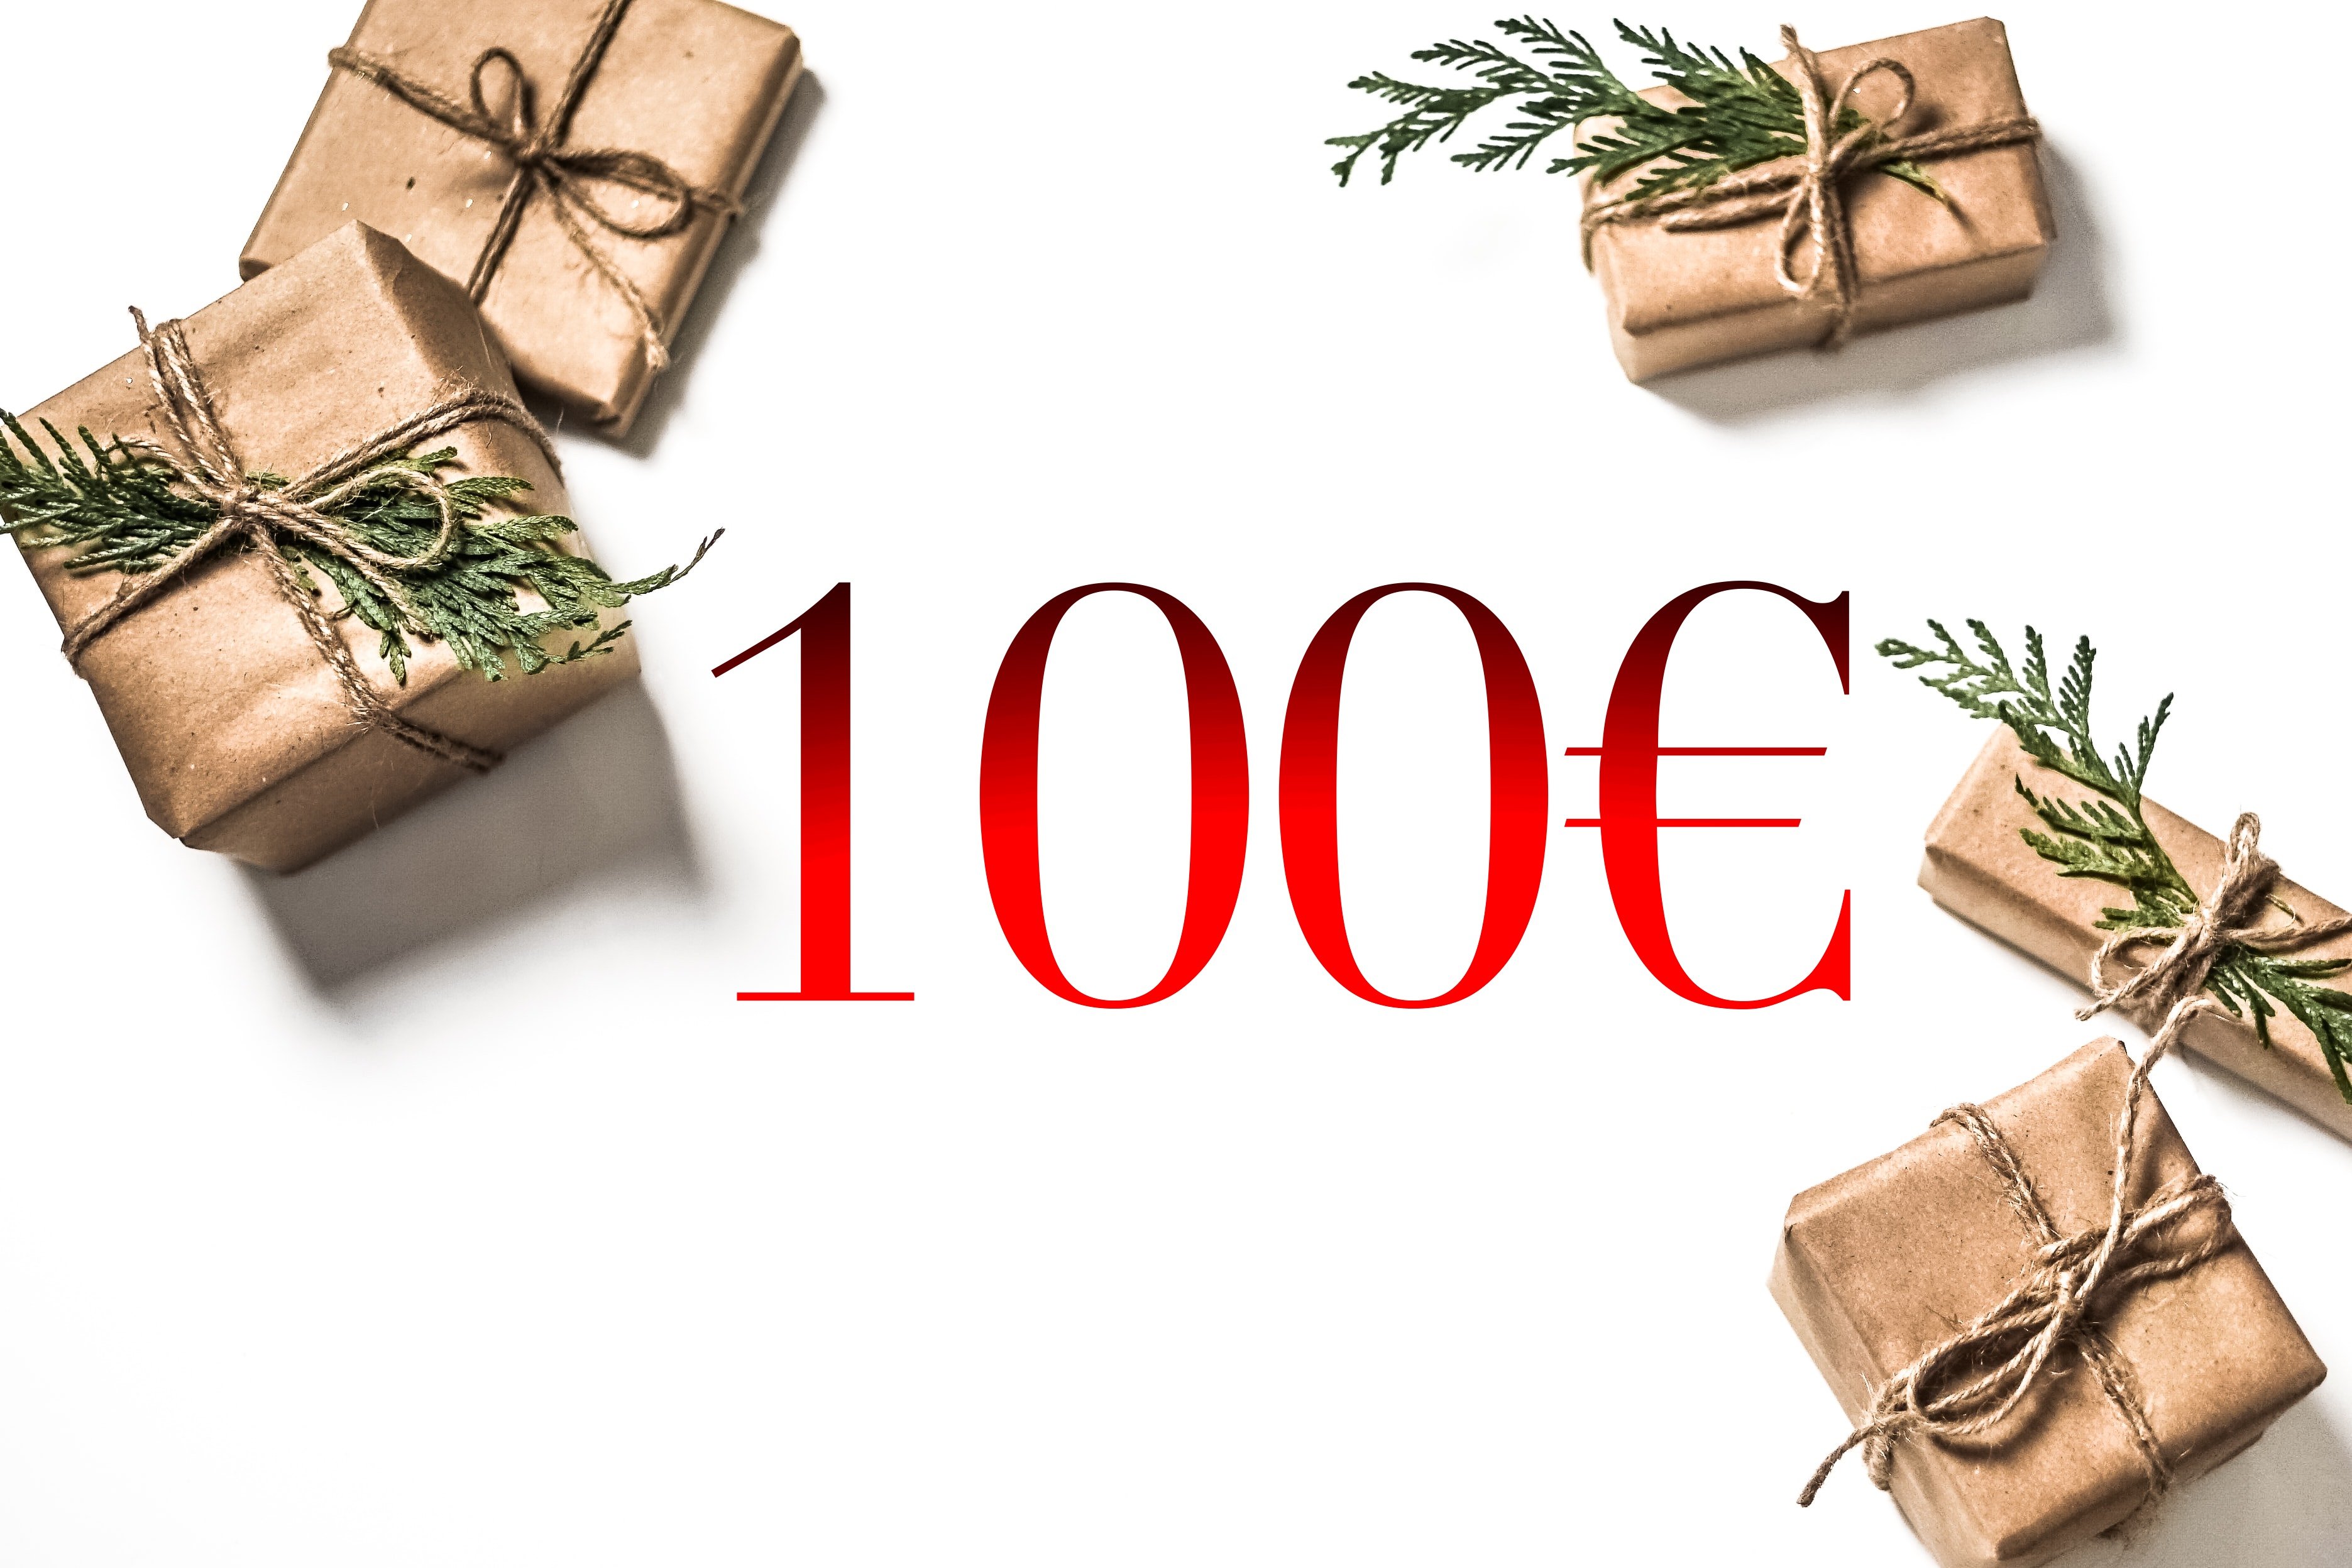 Darčeková poukážka v hodnote 100€